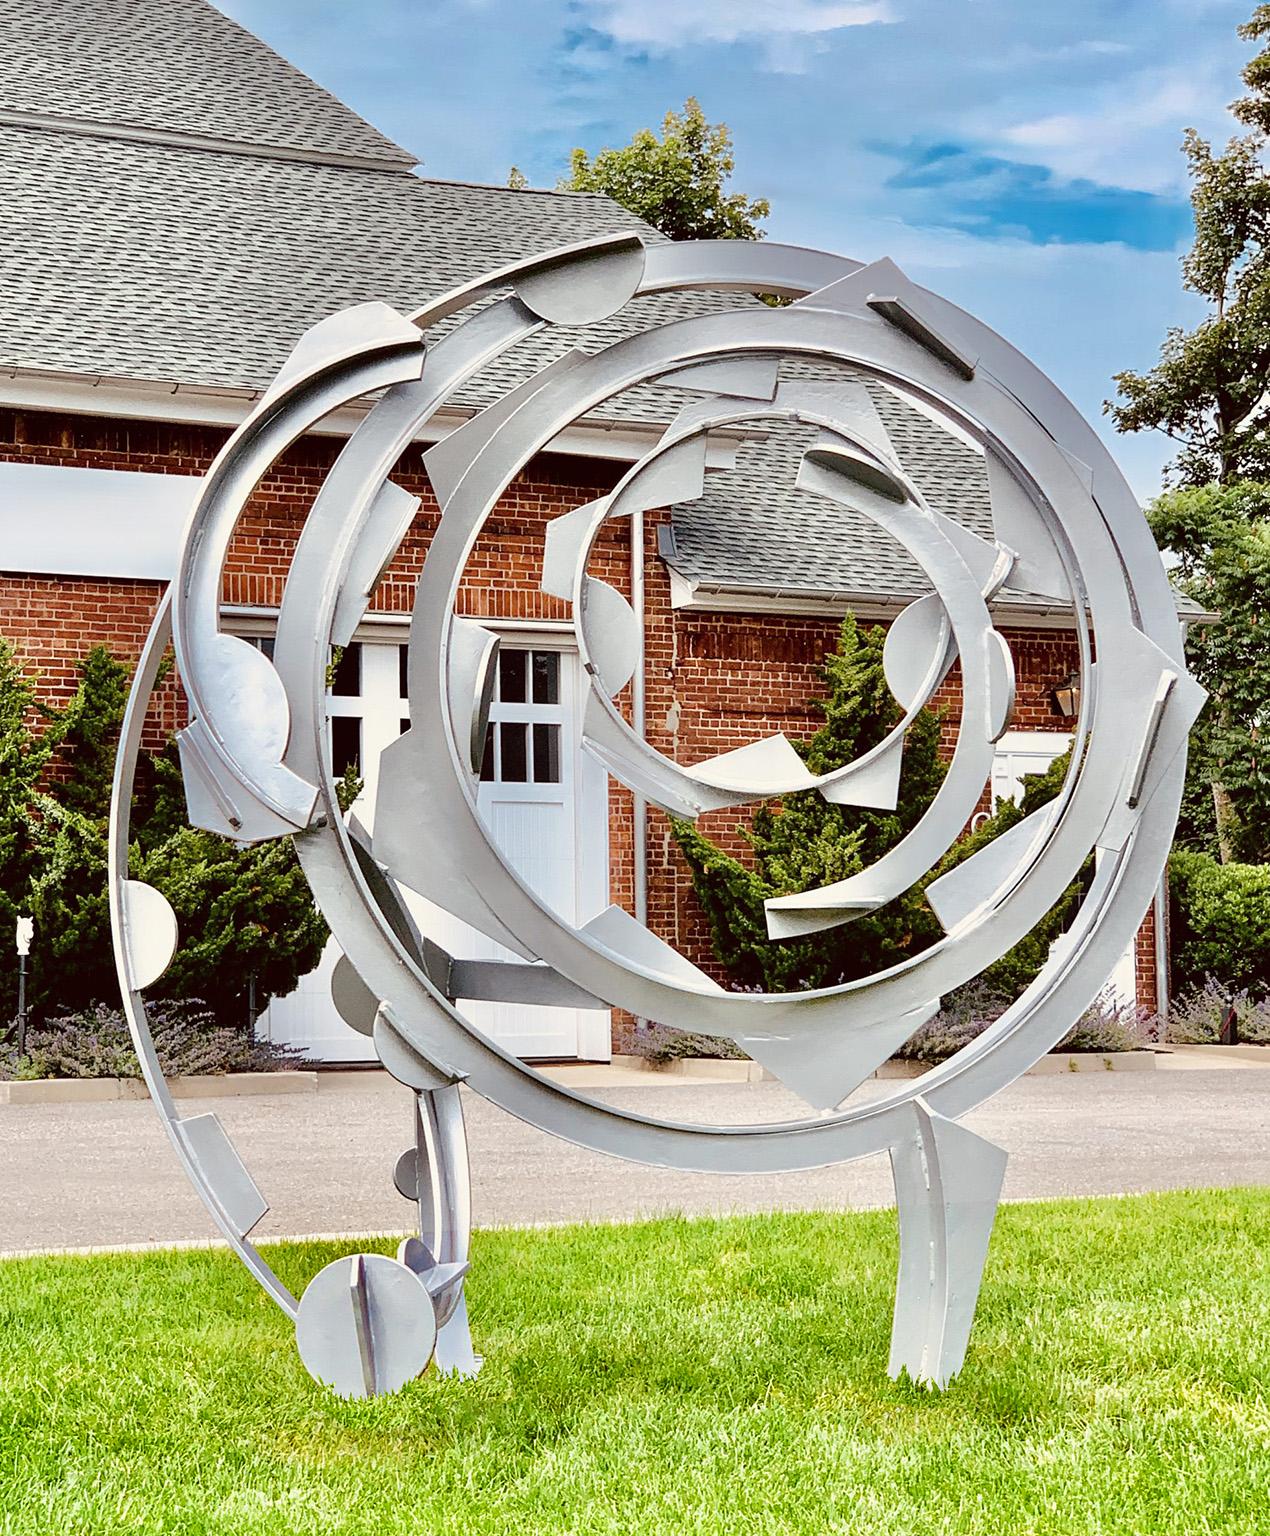 Joel Perlman Abstract Sculpture - "Wonder Wheel" Abstract, Steel Metal Industrial Outdoor Sculpture